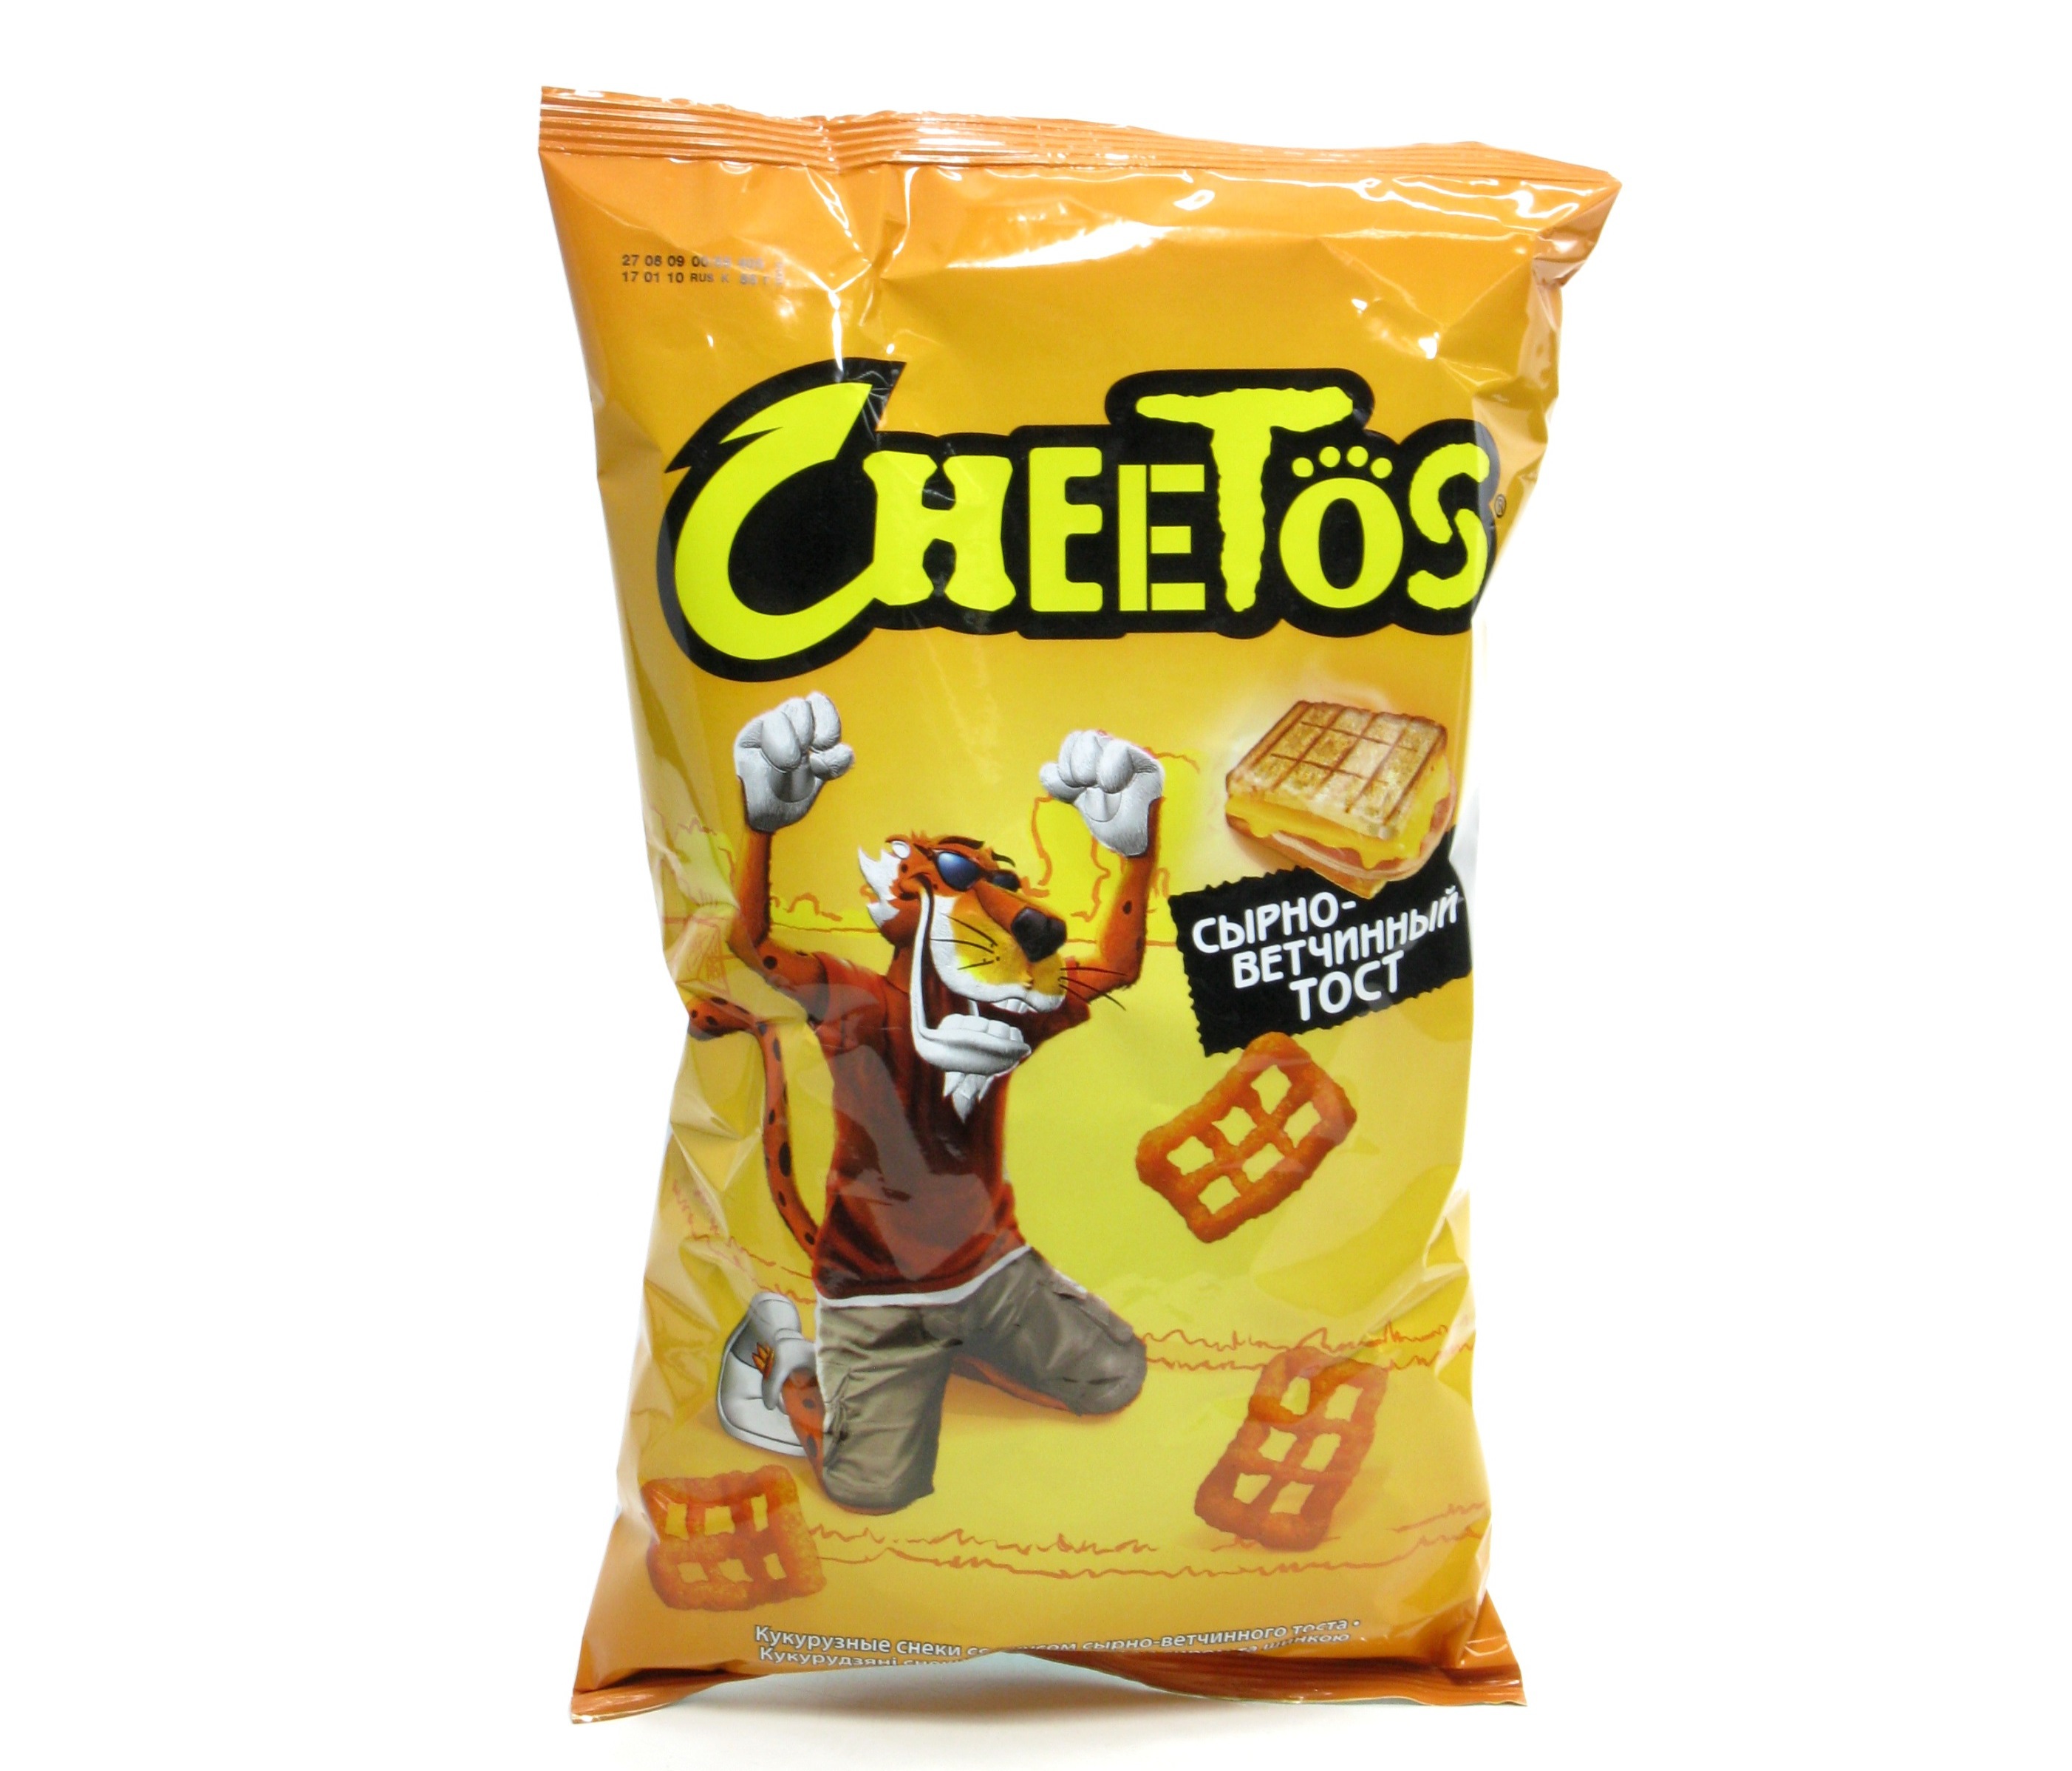 Cheetos Logo Color Scheme  Black  SchemeColorcom